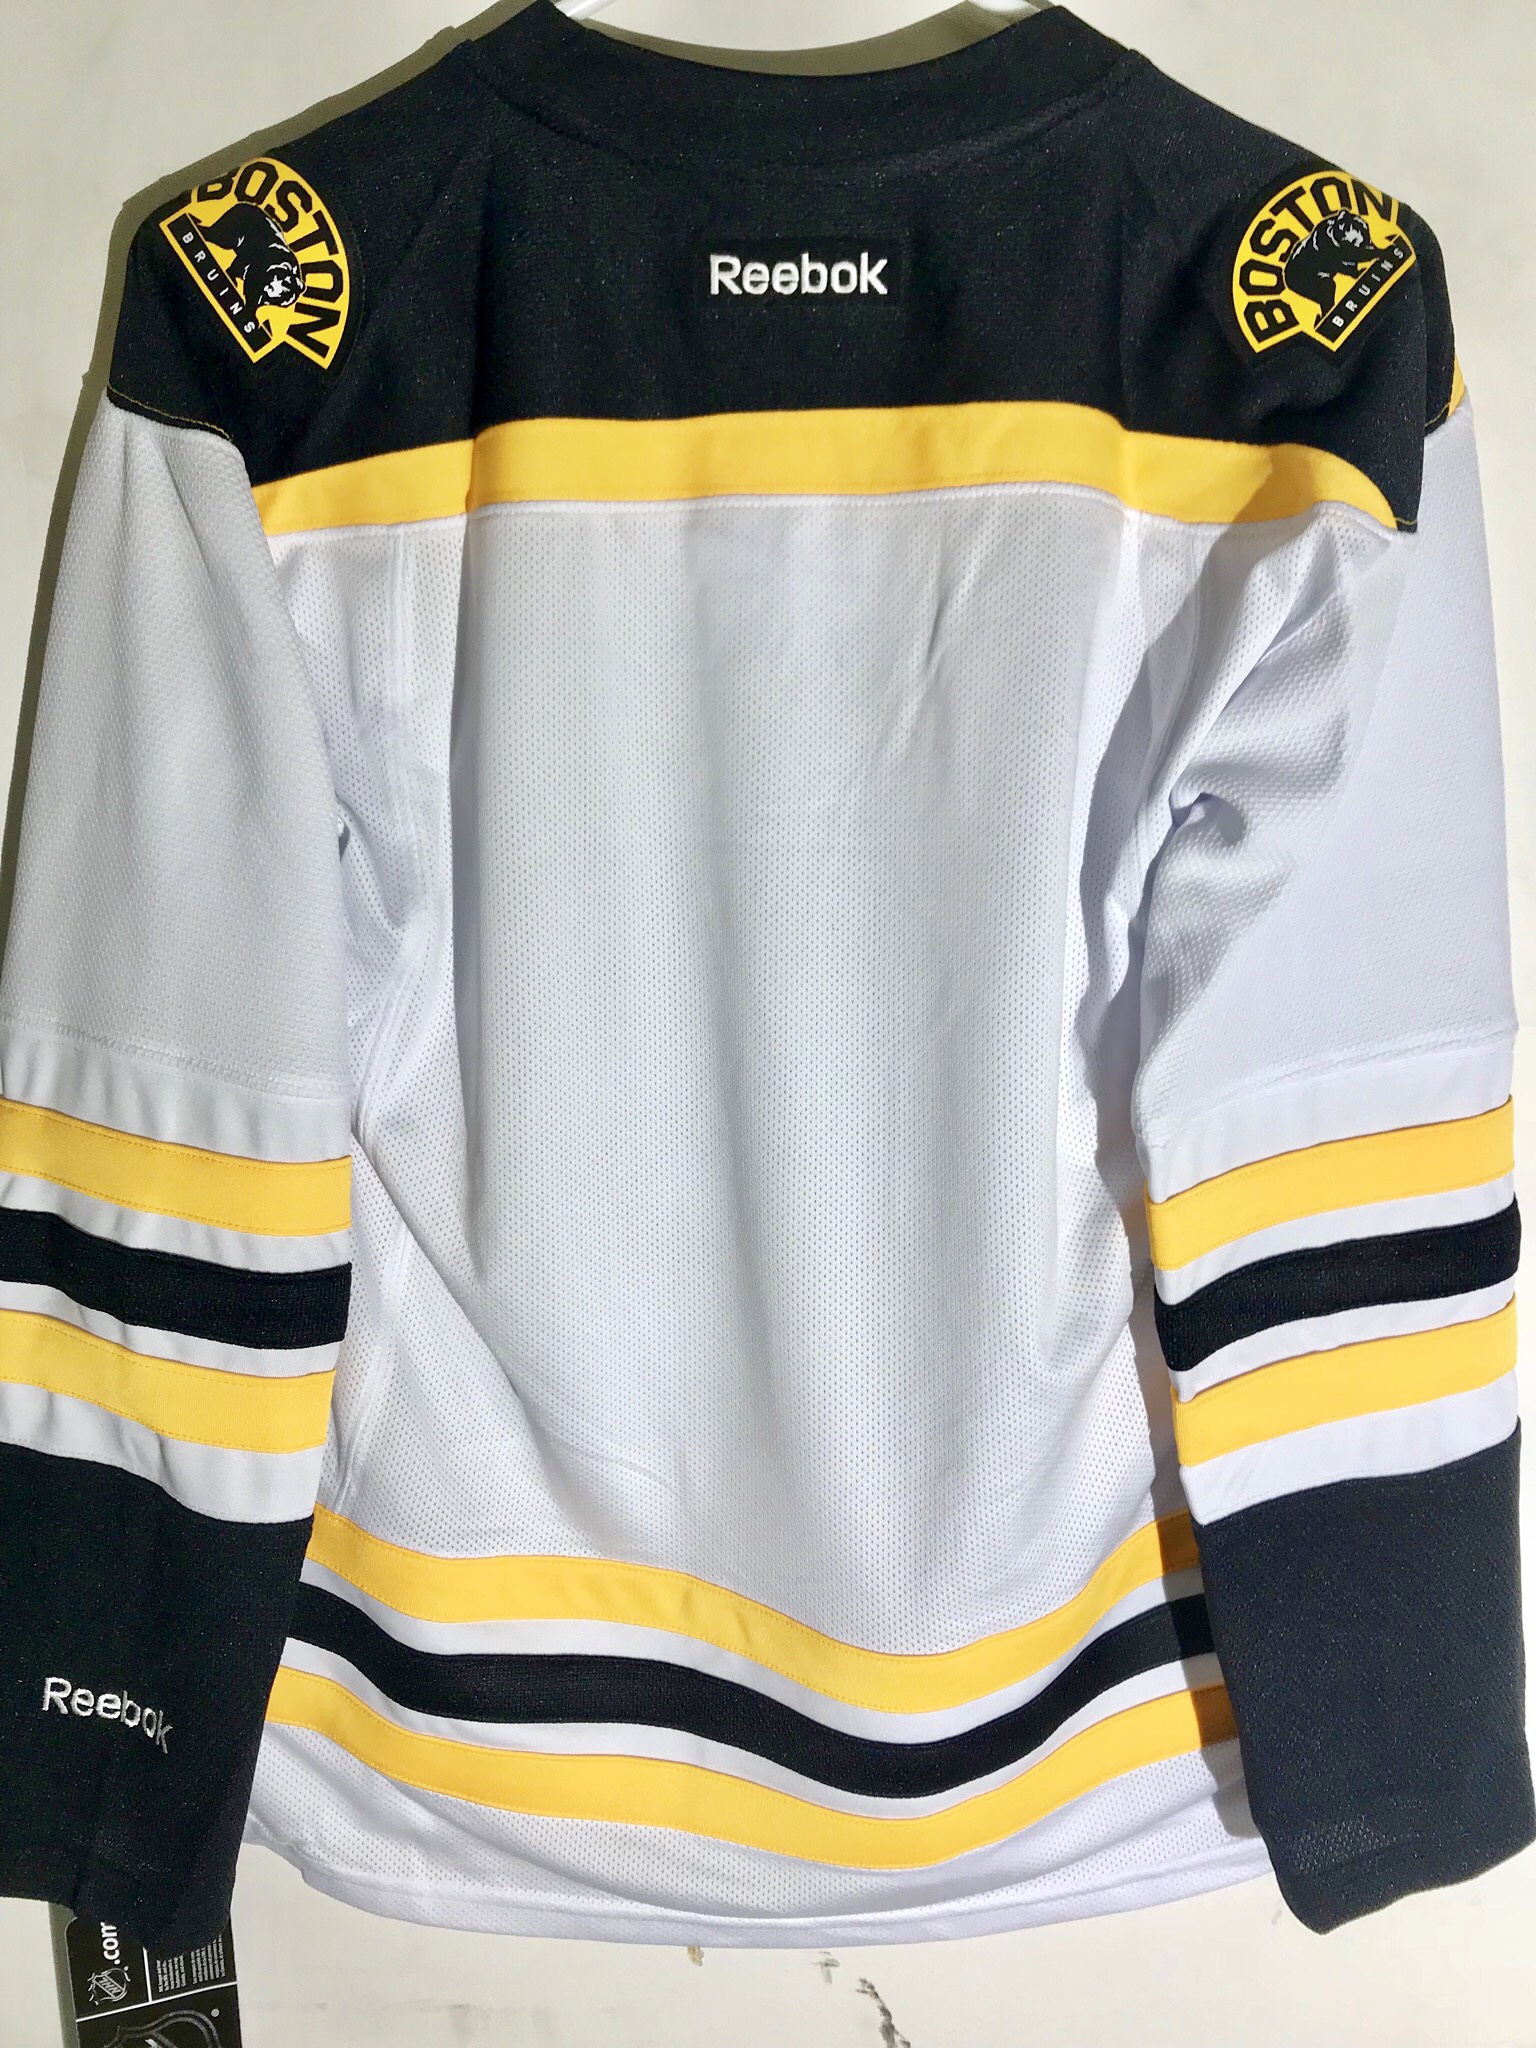 Reebok Women's Premier NHL Jersey Boston Bruins Team White sz L | eBay